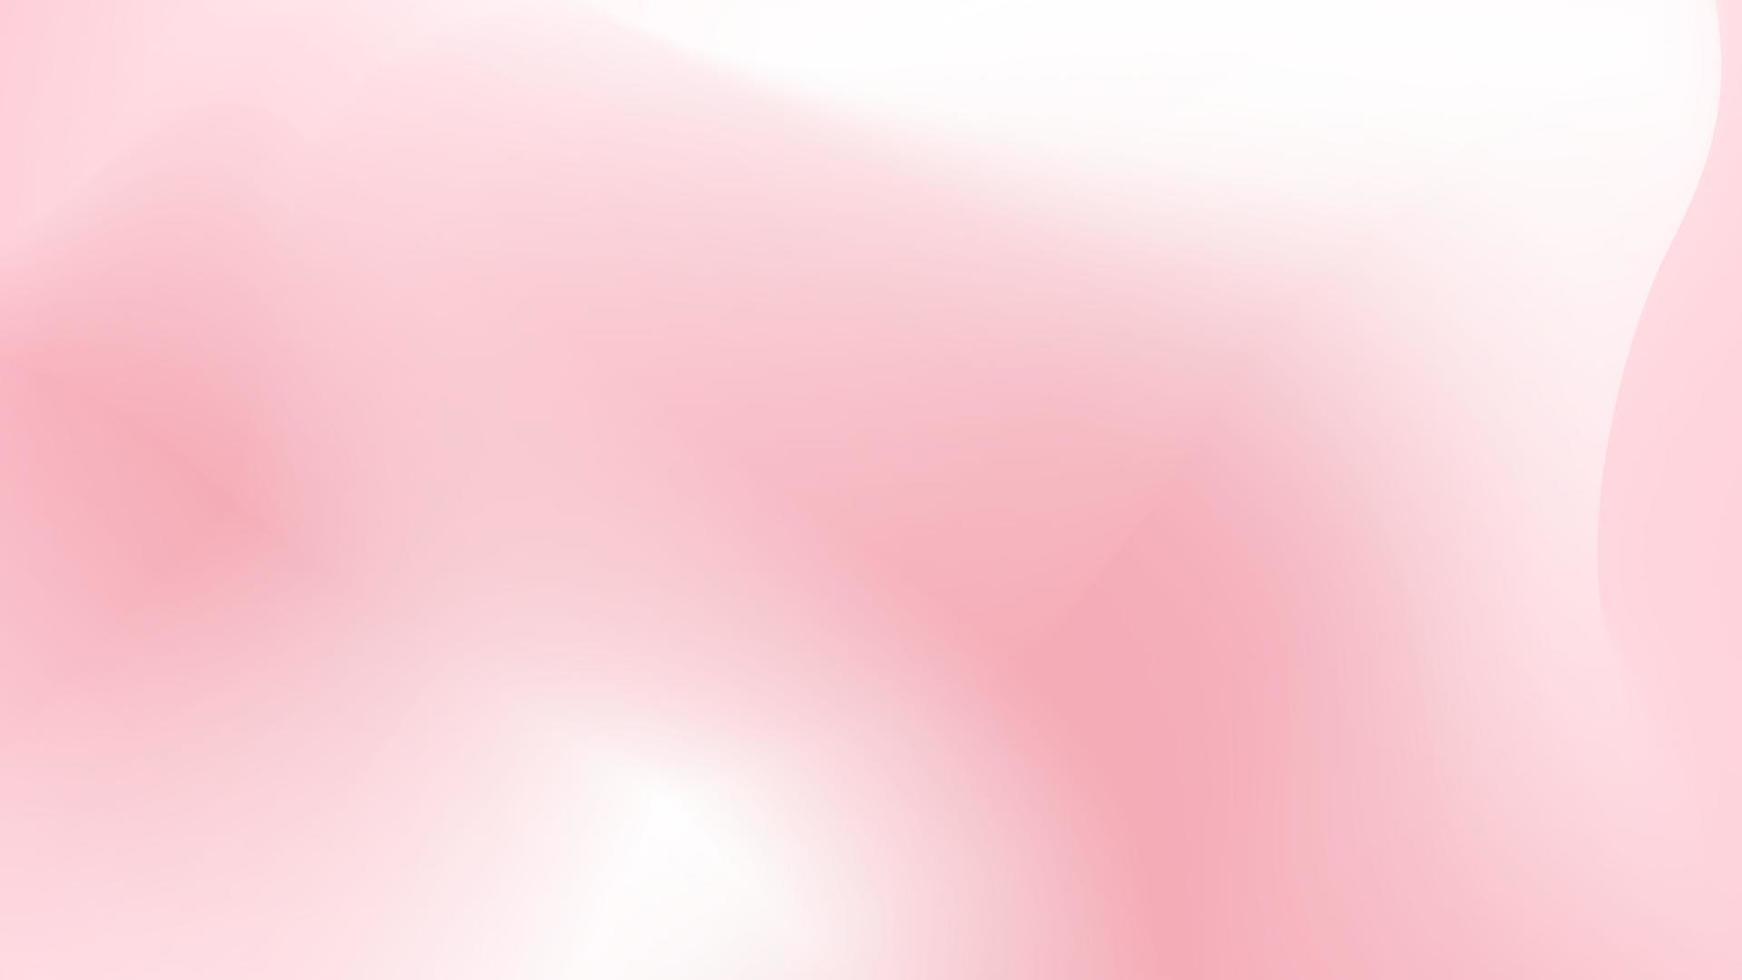 degradado suave, abstracto en colores pastel blanco y rosa, fondo degradado, elemento decorativo de textura degradada borrosa, papel tapiz vectorial. vector